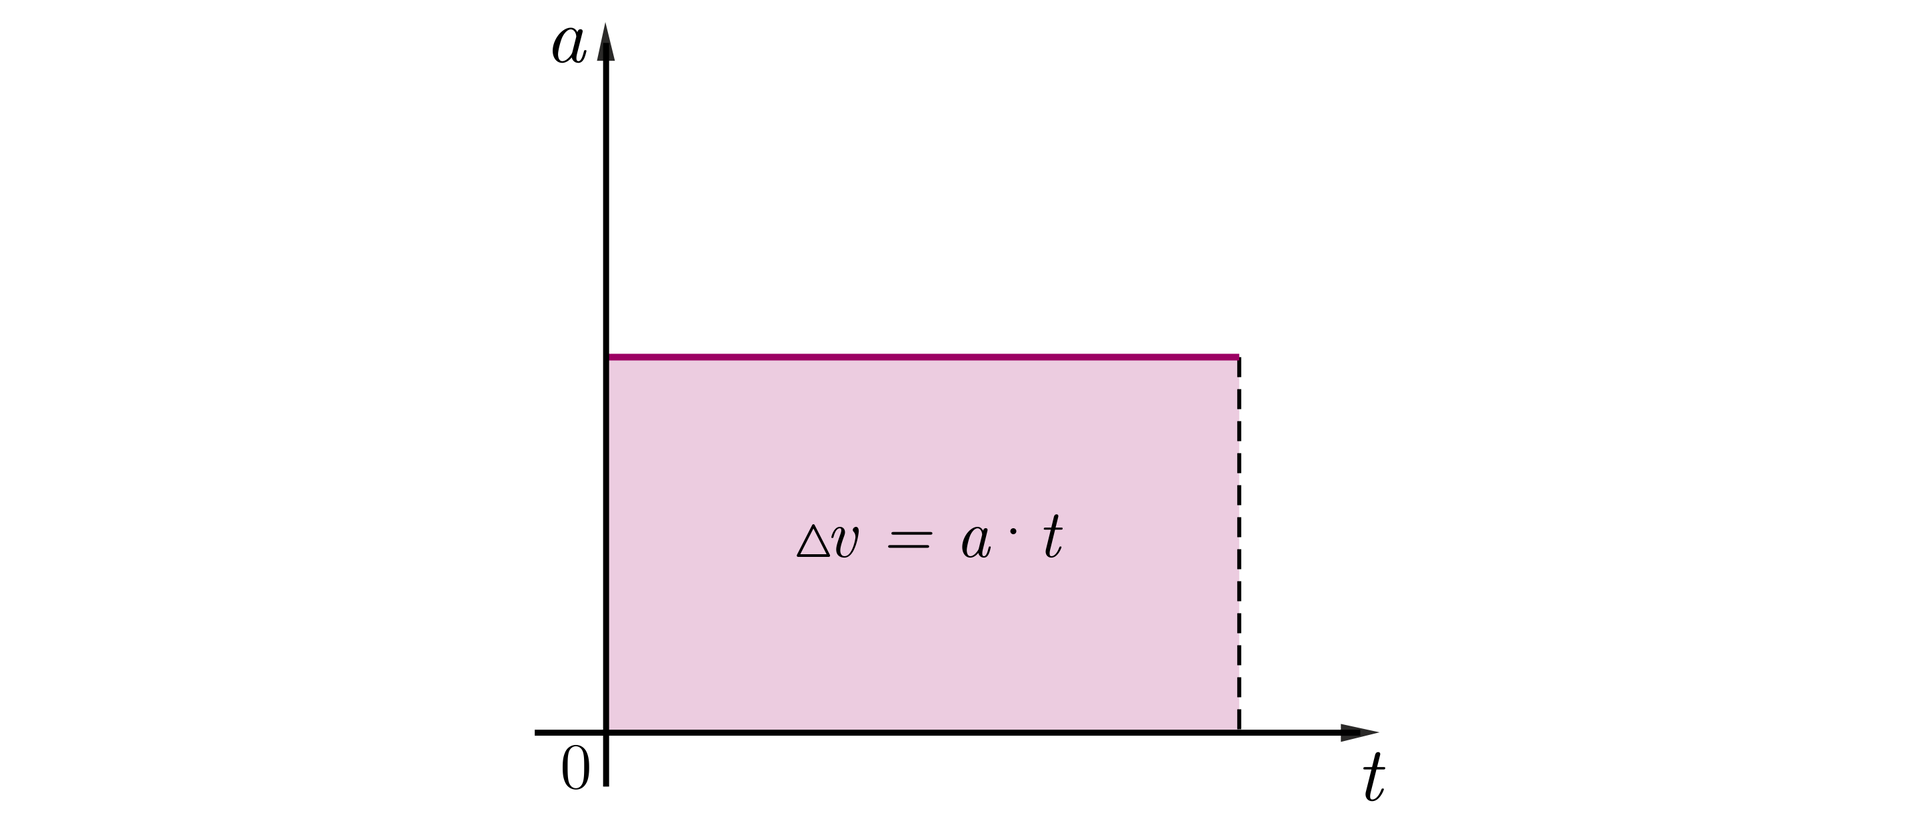 Na rysunku znajduje się układ współrzędnych, oś pozioma oznaczona jako t, oś pionowa jako v. Na pewnej wysokości zaznaczono różowy poziomy odcinek o pewnej długości. Lewy koniec odcinka znajduje się na pionowej osi a. Jest to wykres przyspieszenia od czasu i odcinek ten pokrywa się z prostą będącą wykresem funkcji a od t. Z prawego końca tego odcinka opuszczony jest pionowy odcinek narysowany przerywaną linią. Dolny koniec tego odcinka znajduje się na poziomej osi poziomej. Obszar wyznaczony przez te dwa odcinki oraz osie pionową i poziomą zamalowany jest na kolor różowy i tworzy prostokąt na środku którego zapisano wzór delta v równa się a razy t.